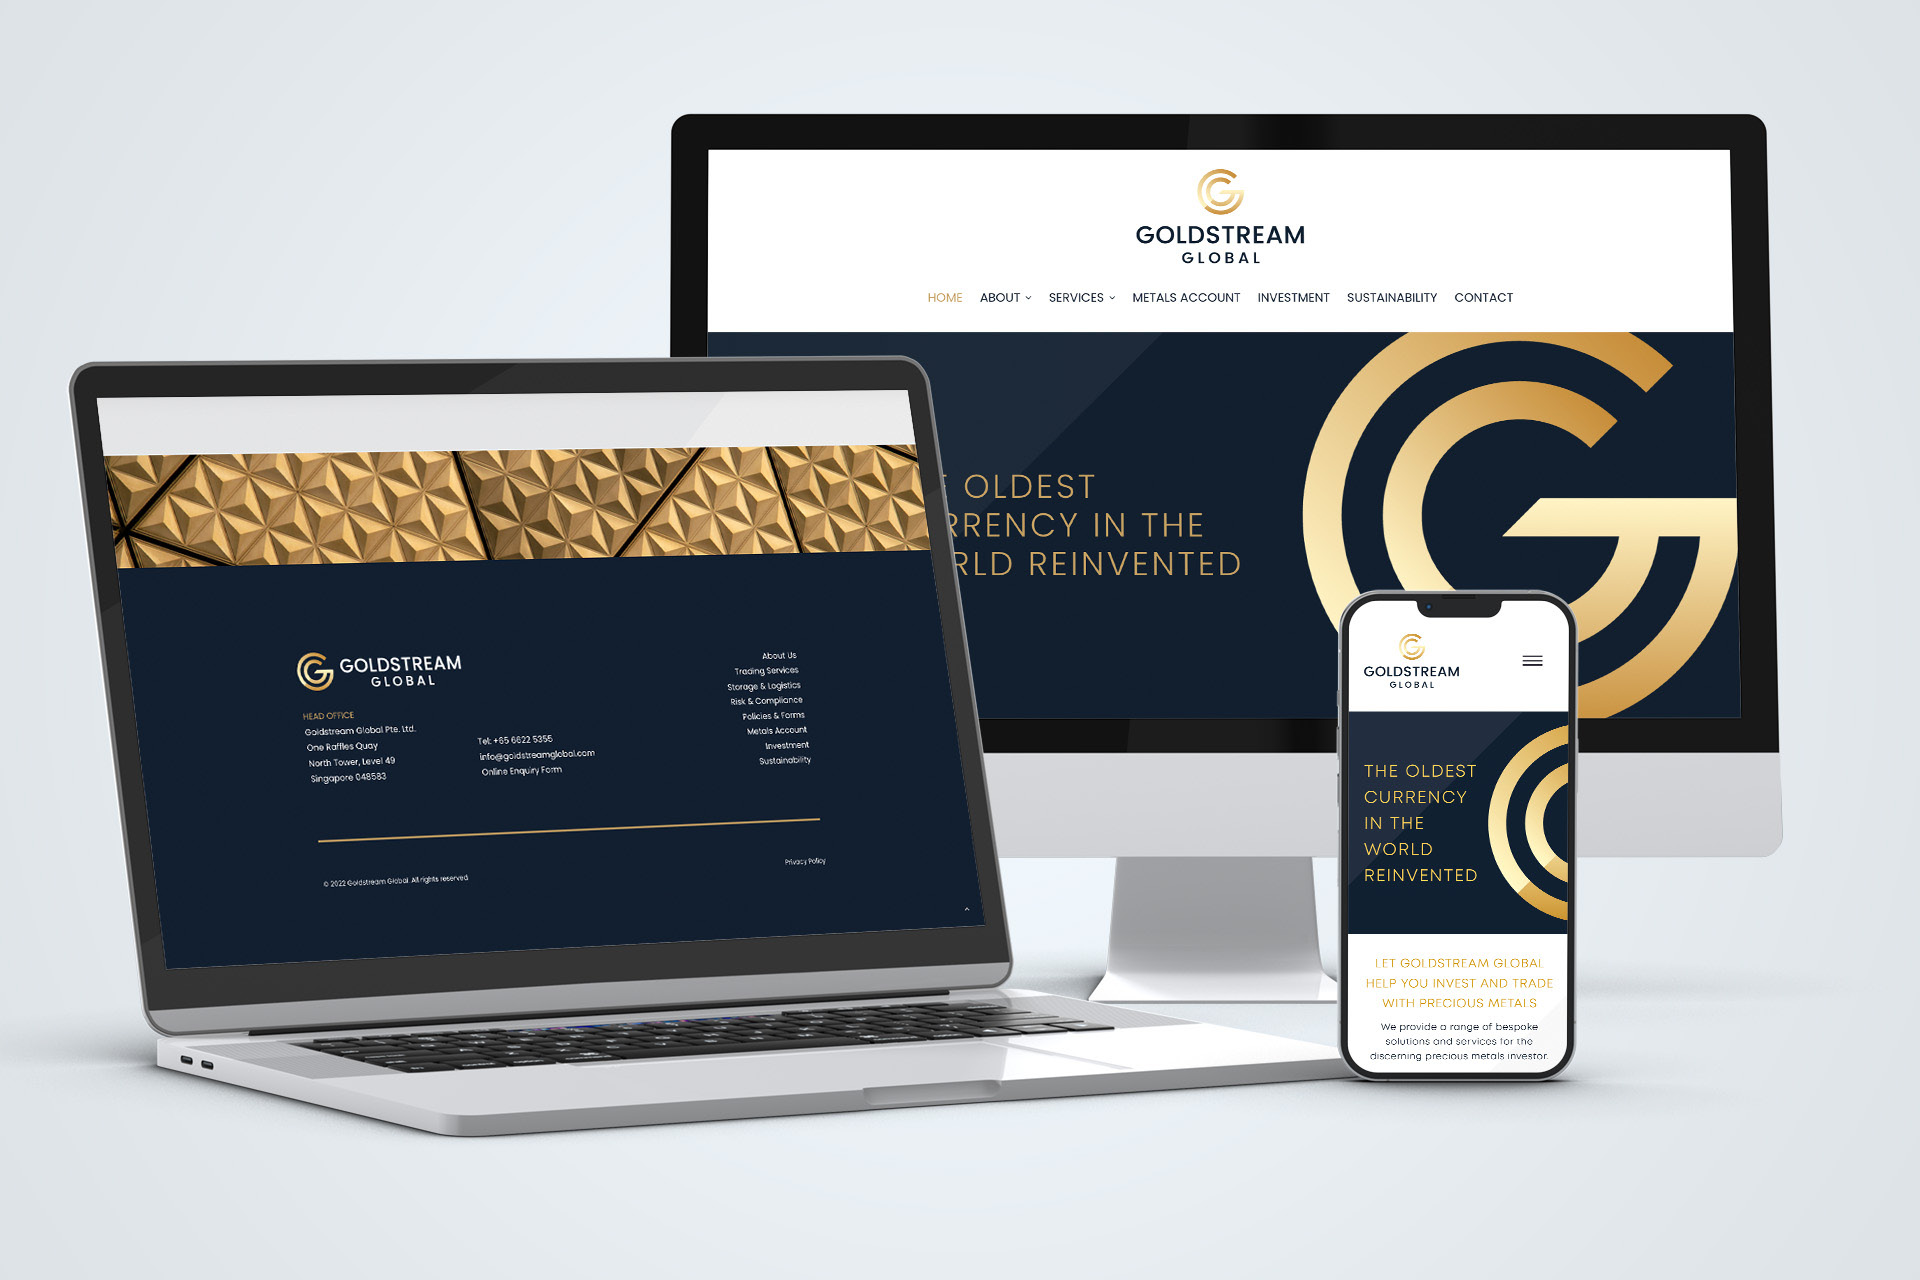 Goldstream Global website design and hosting